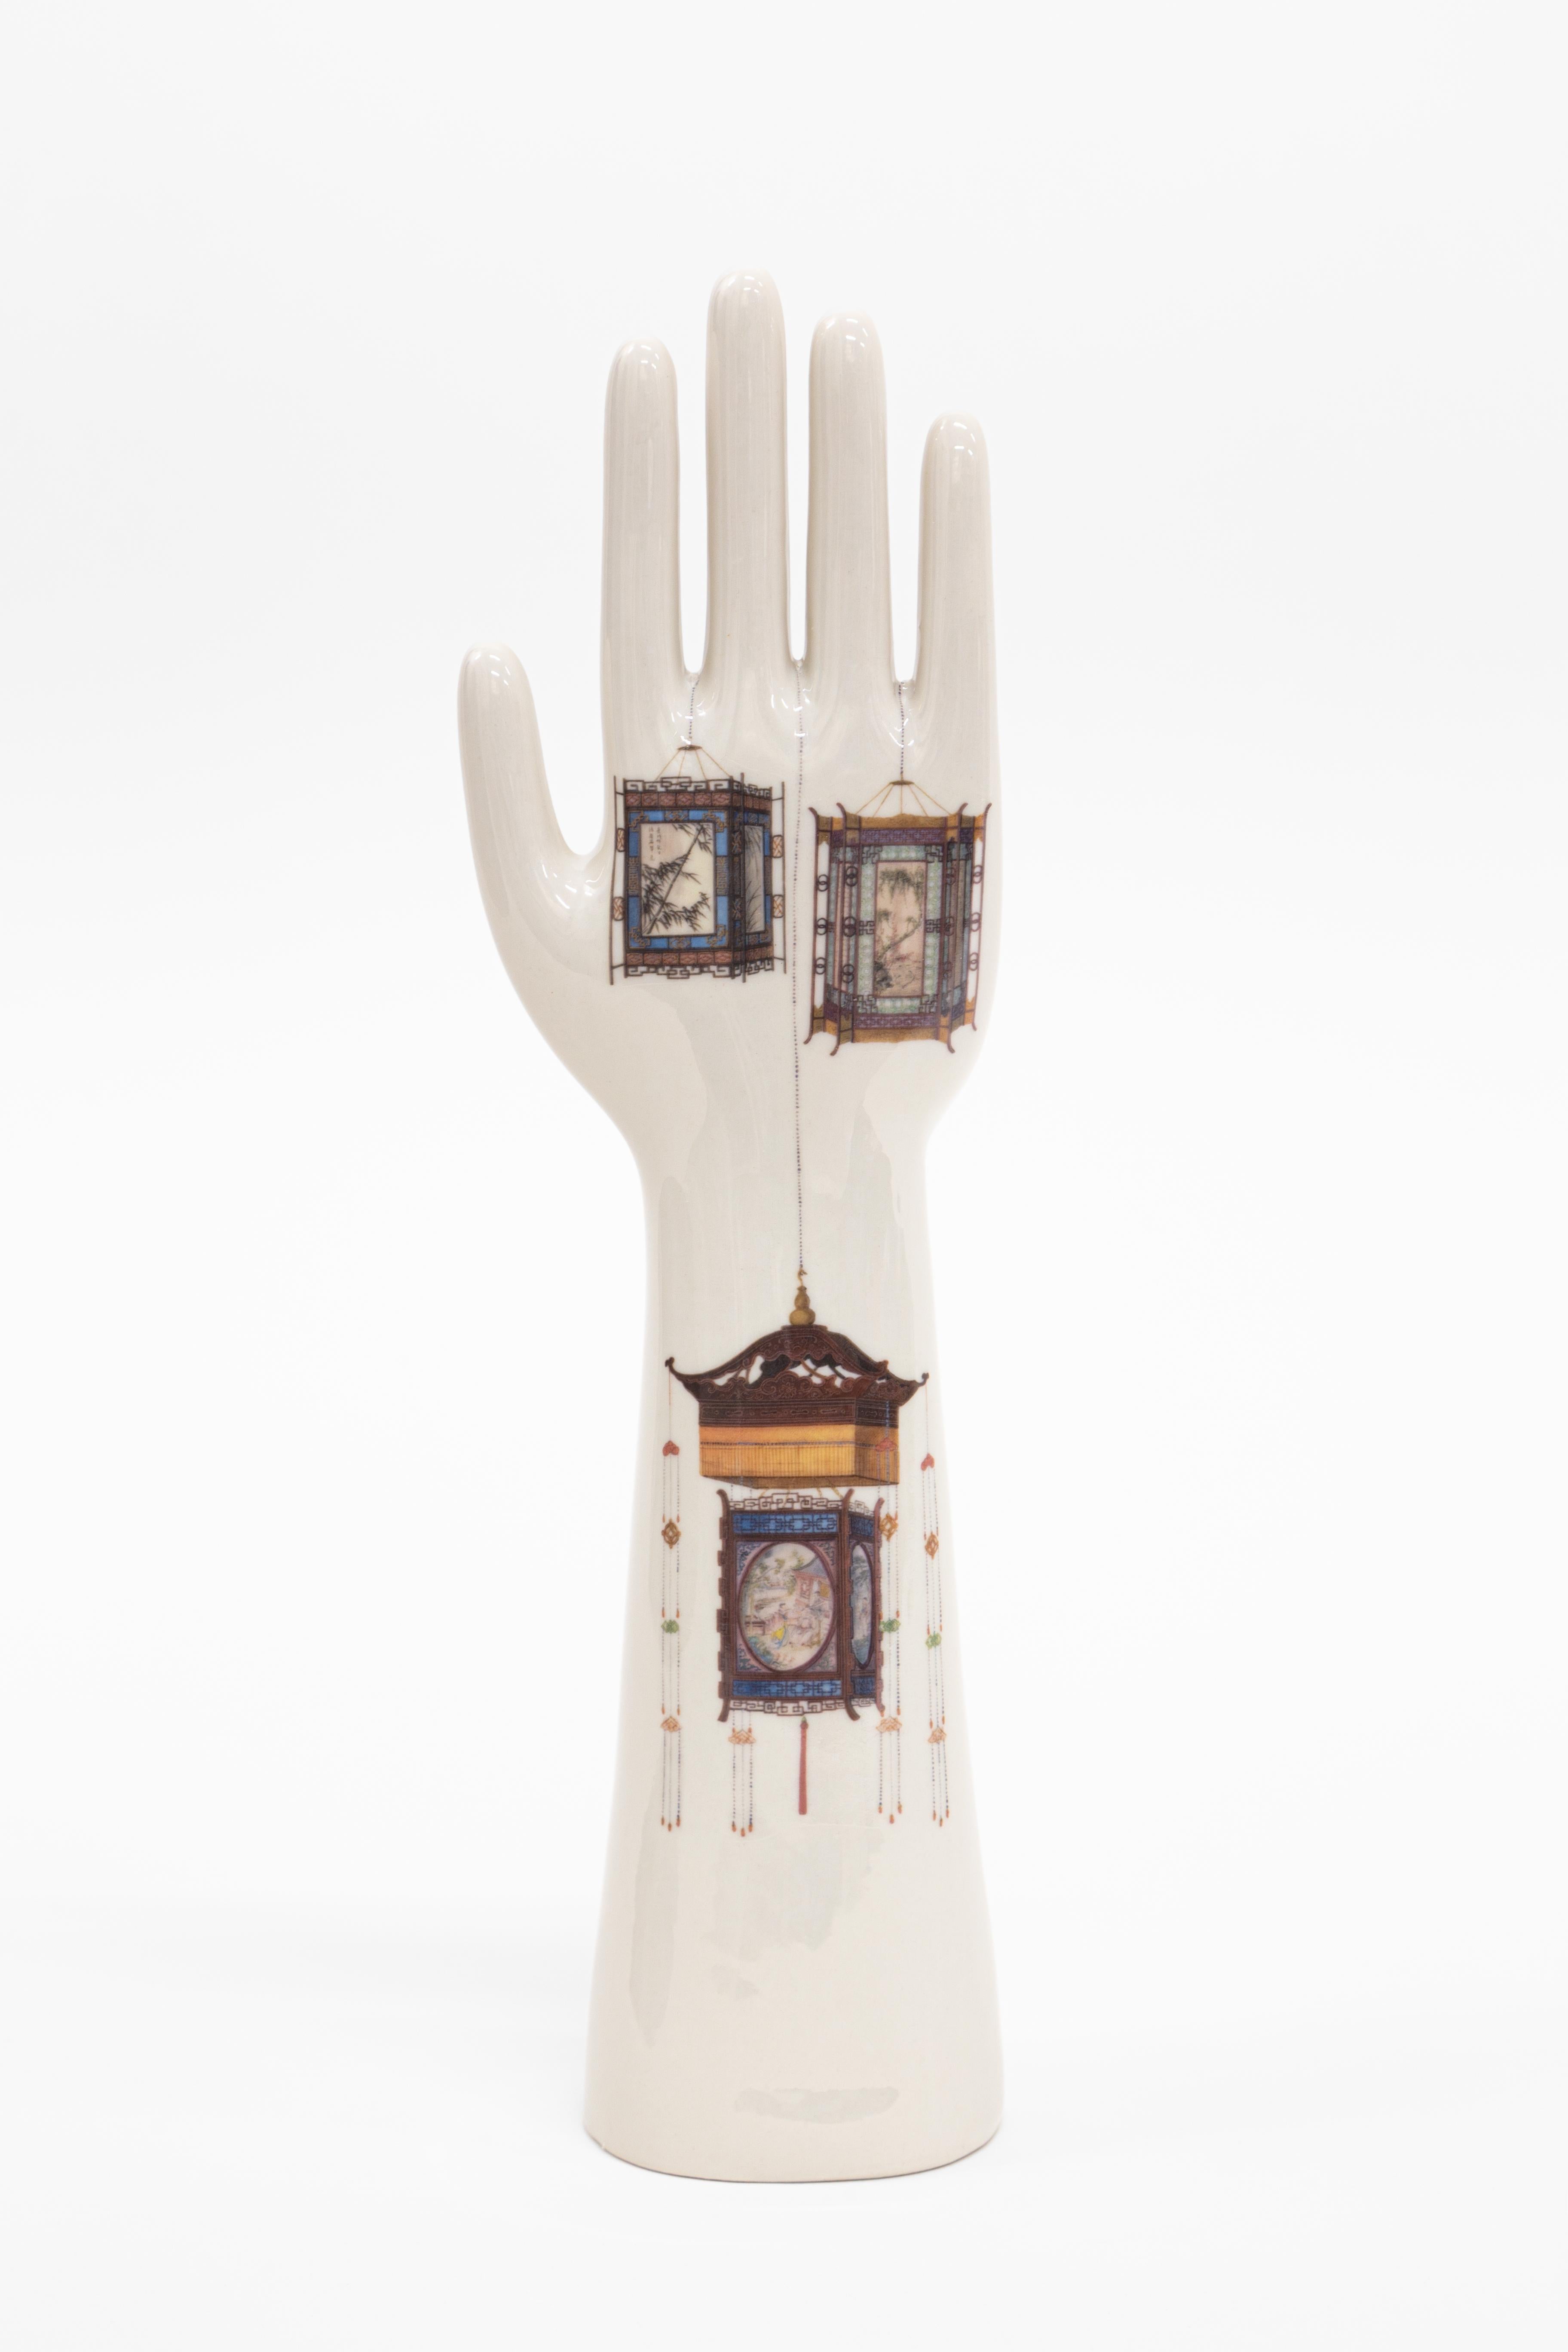 Die Porzellanhände der Kollektion Anatomica, die Vito Nesta für seine Marke Grand Tour entworfen hat, sind ein intramontabiles Designobjekt von hohem dekorativem Wert. Die Herstellung dieser Schweine ist den Fratelli Majello zu verdanken, die seit